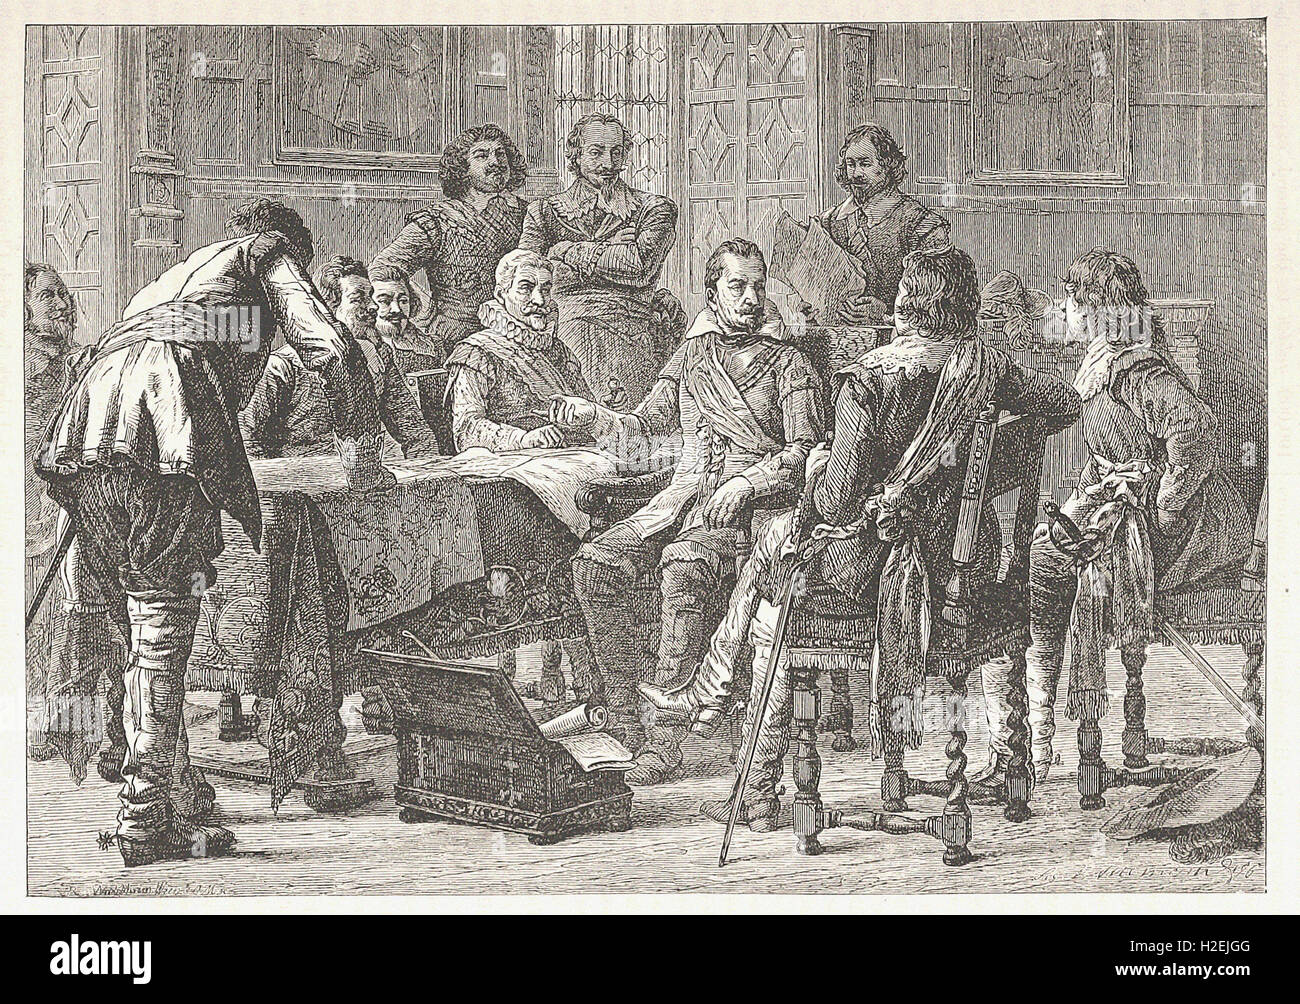 TILLY ET WALLENSTEIN TENANT UN CONSEIL DE GUERRE - de 'Cassell's Illustrated Histoire universelle" - 1882 Banque D'Images